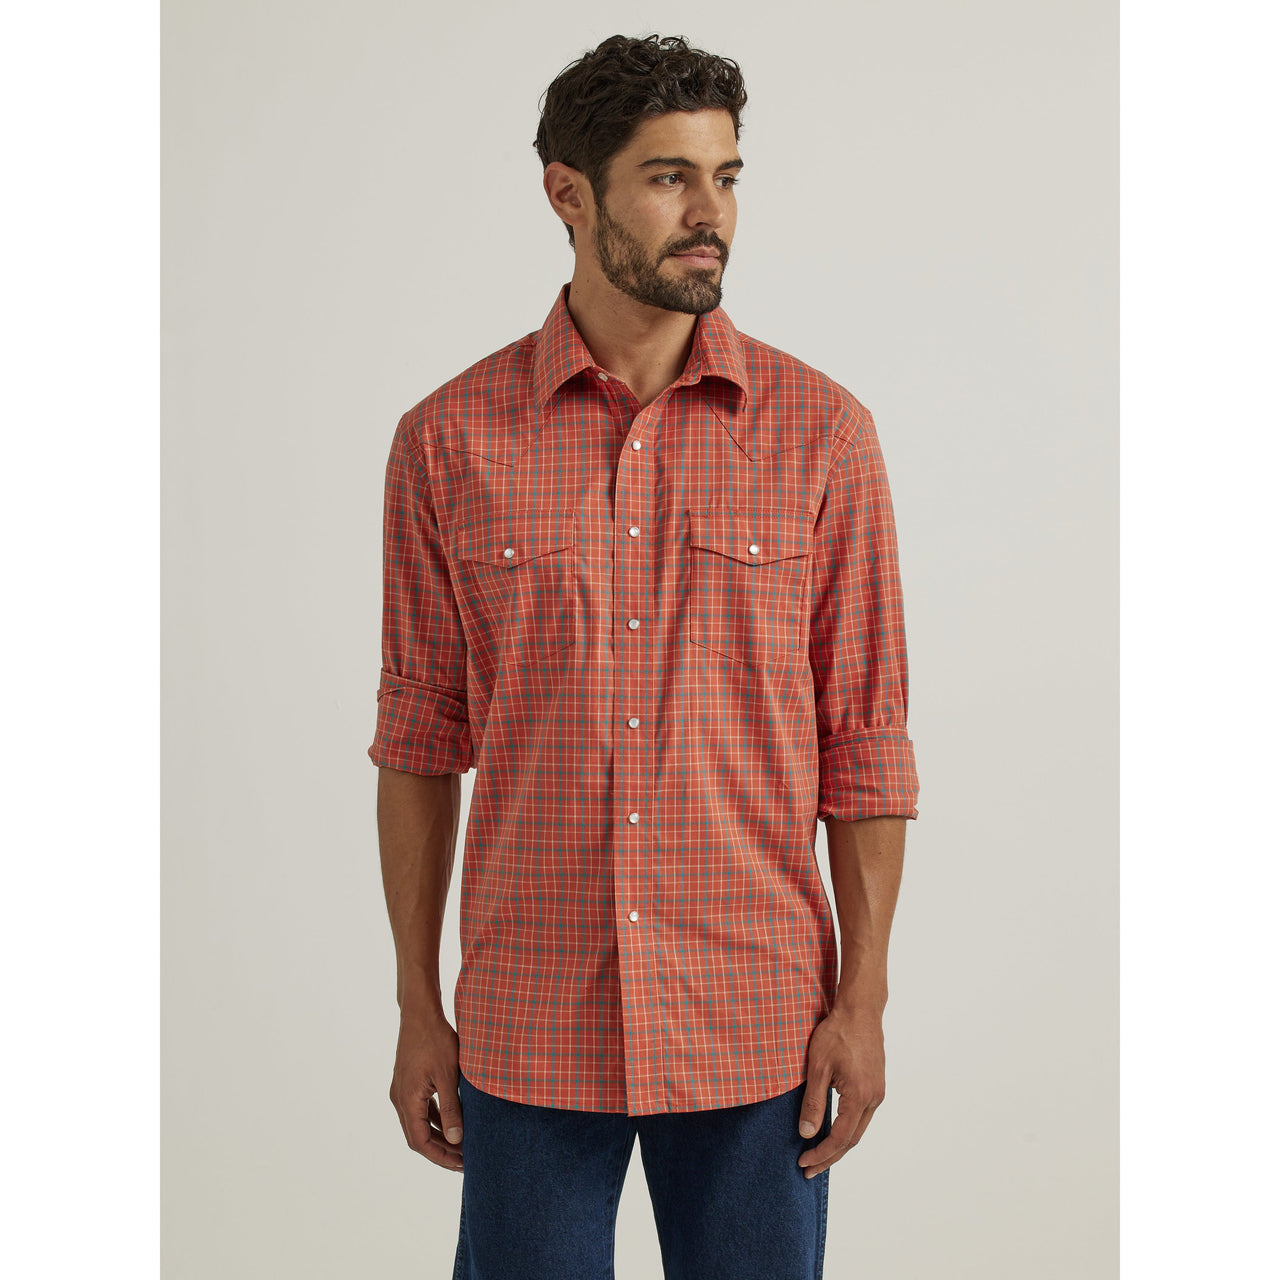 Wrangler Men's Wrinkle Resist Long Sleeve Shirt - Orange